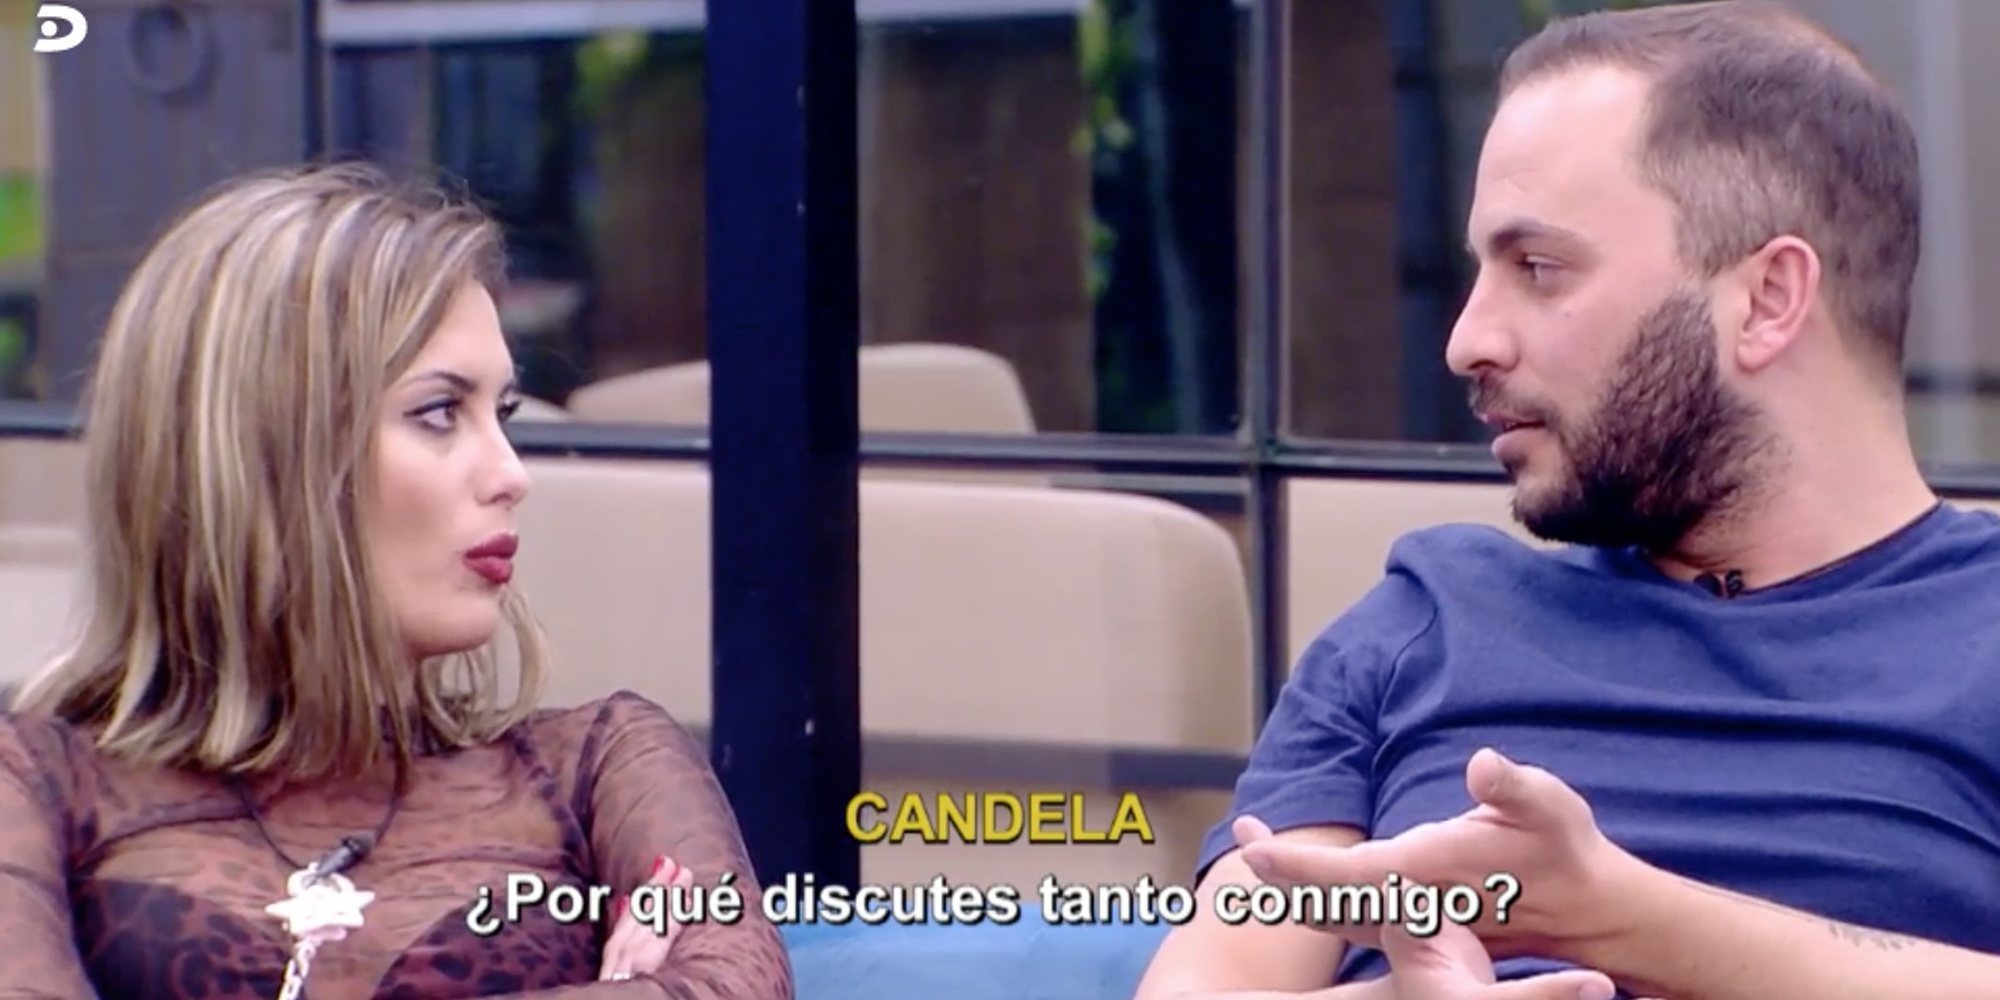 Antonio Tejado a Candela Acevedo en 'GH DÚO': "Cuando salga de aquí voy a ir a por tu familia a muerte"